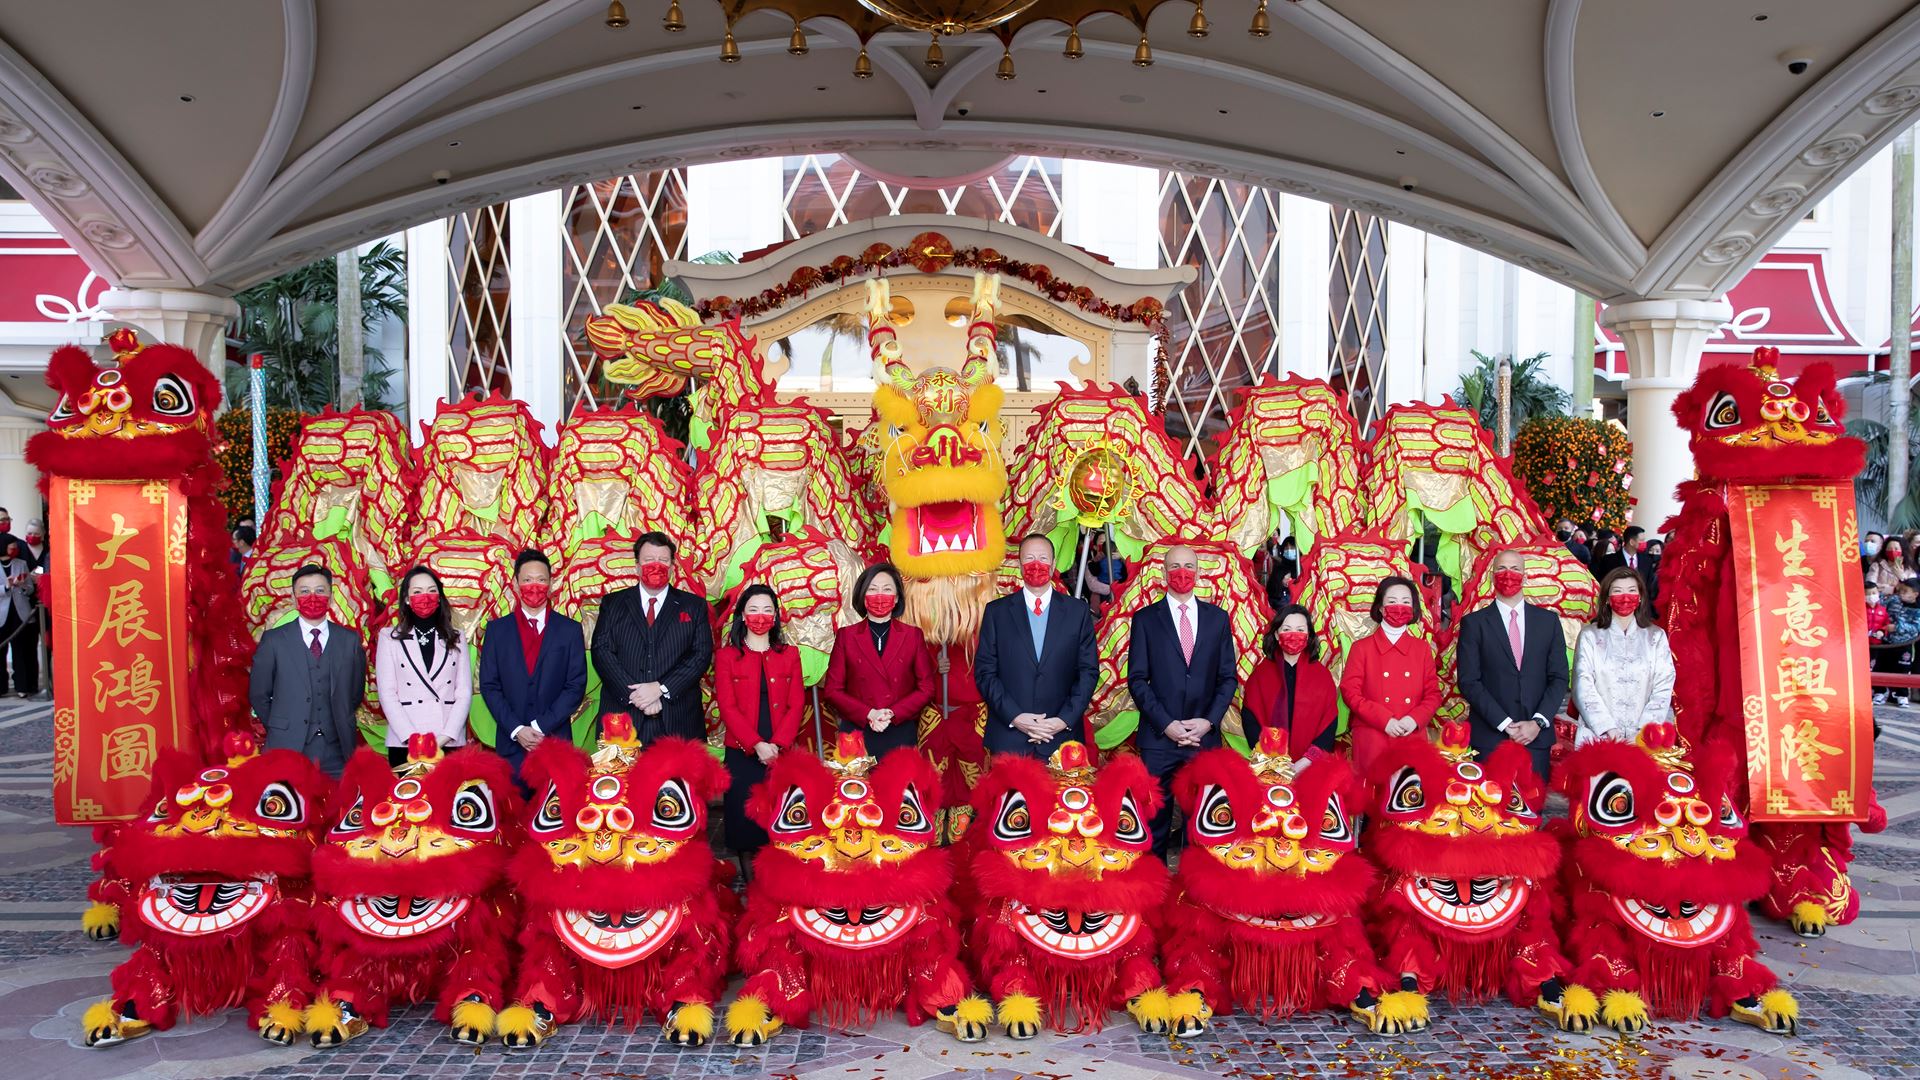 永利管理层团队于金龙醒狮贺岁表演后于永利皇宫大合照。